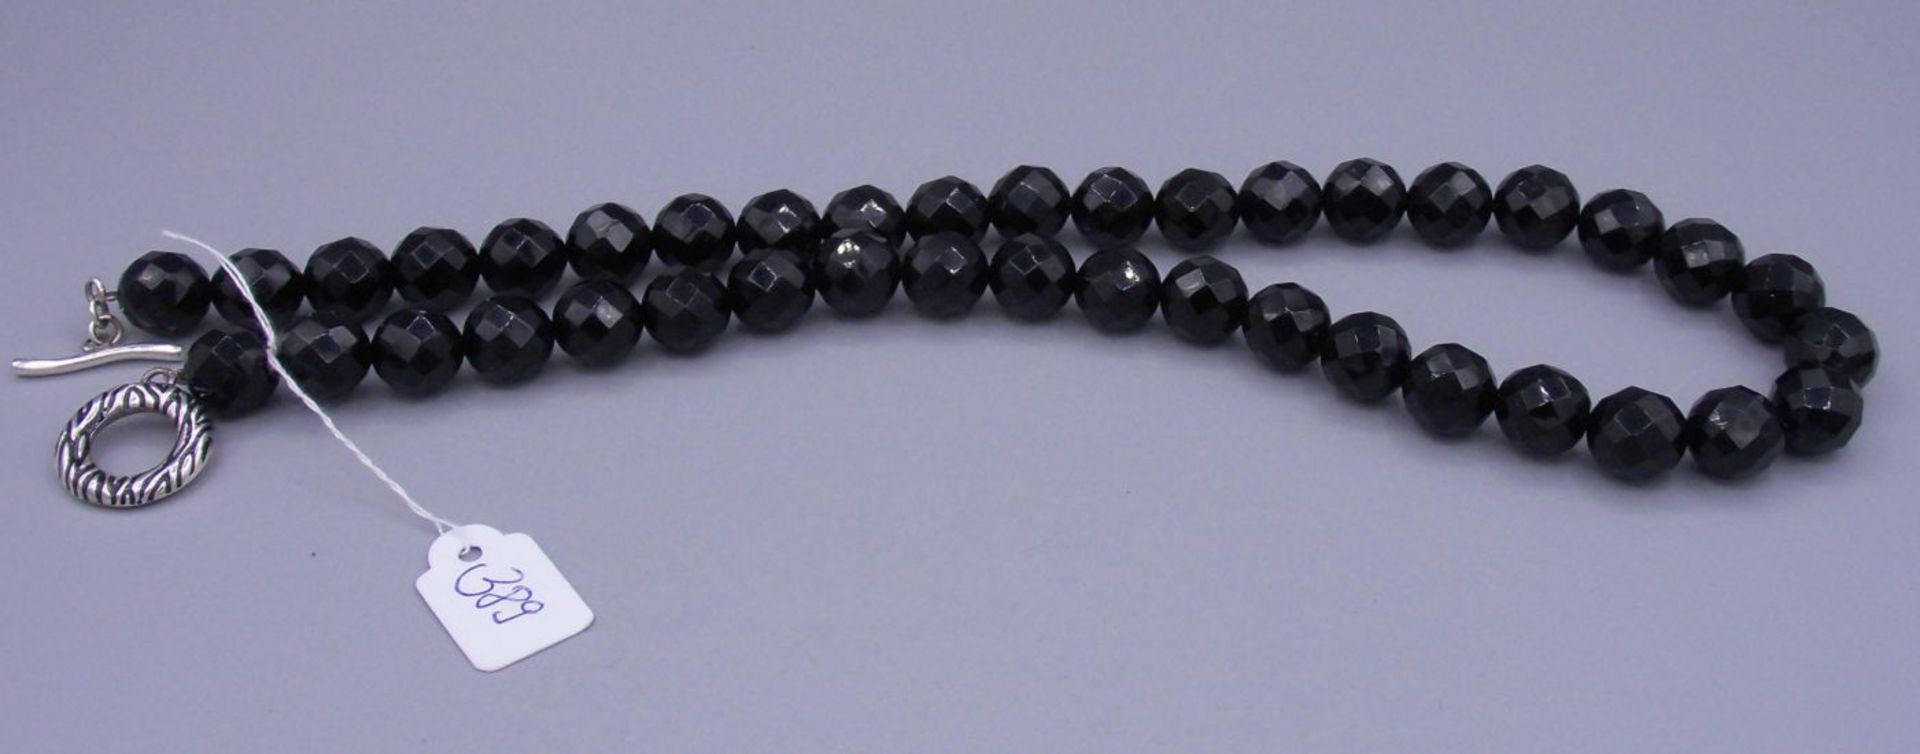 ONYX - KETTE / necklace, mit facettiert geschliffenen Kugeln und 925er Silberverschluss. Kugel-D. - Image 4 of 4